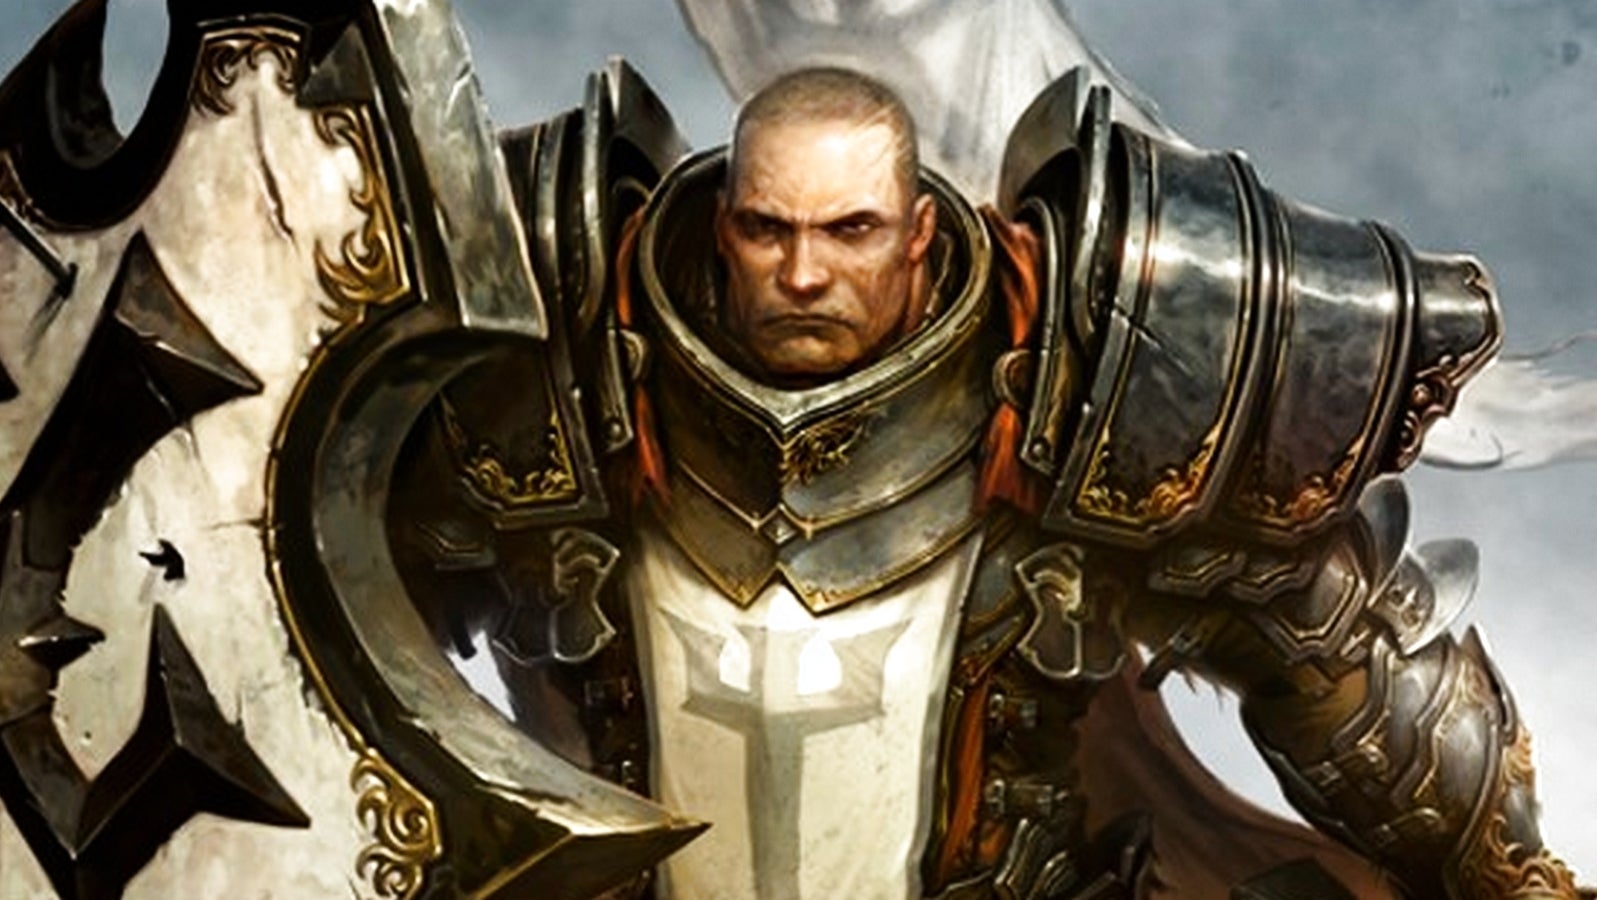 Bilder zu Diablo 3 gibt's gerade kostenlos mit Xbox Live Gold - aber keiner weiß warum